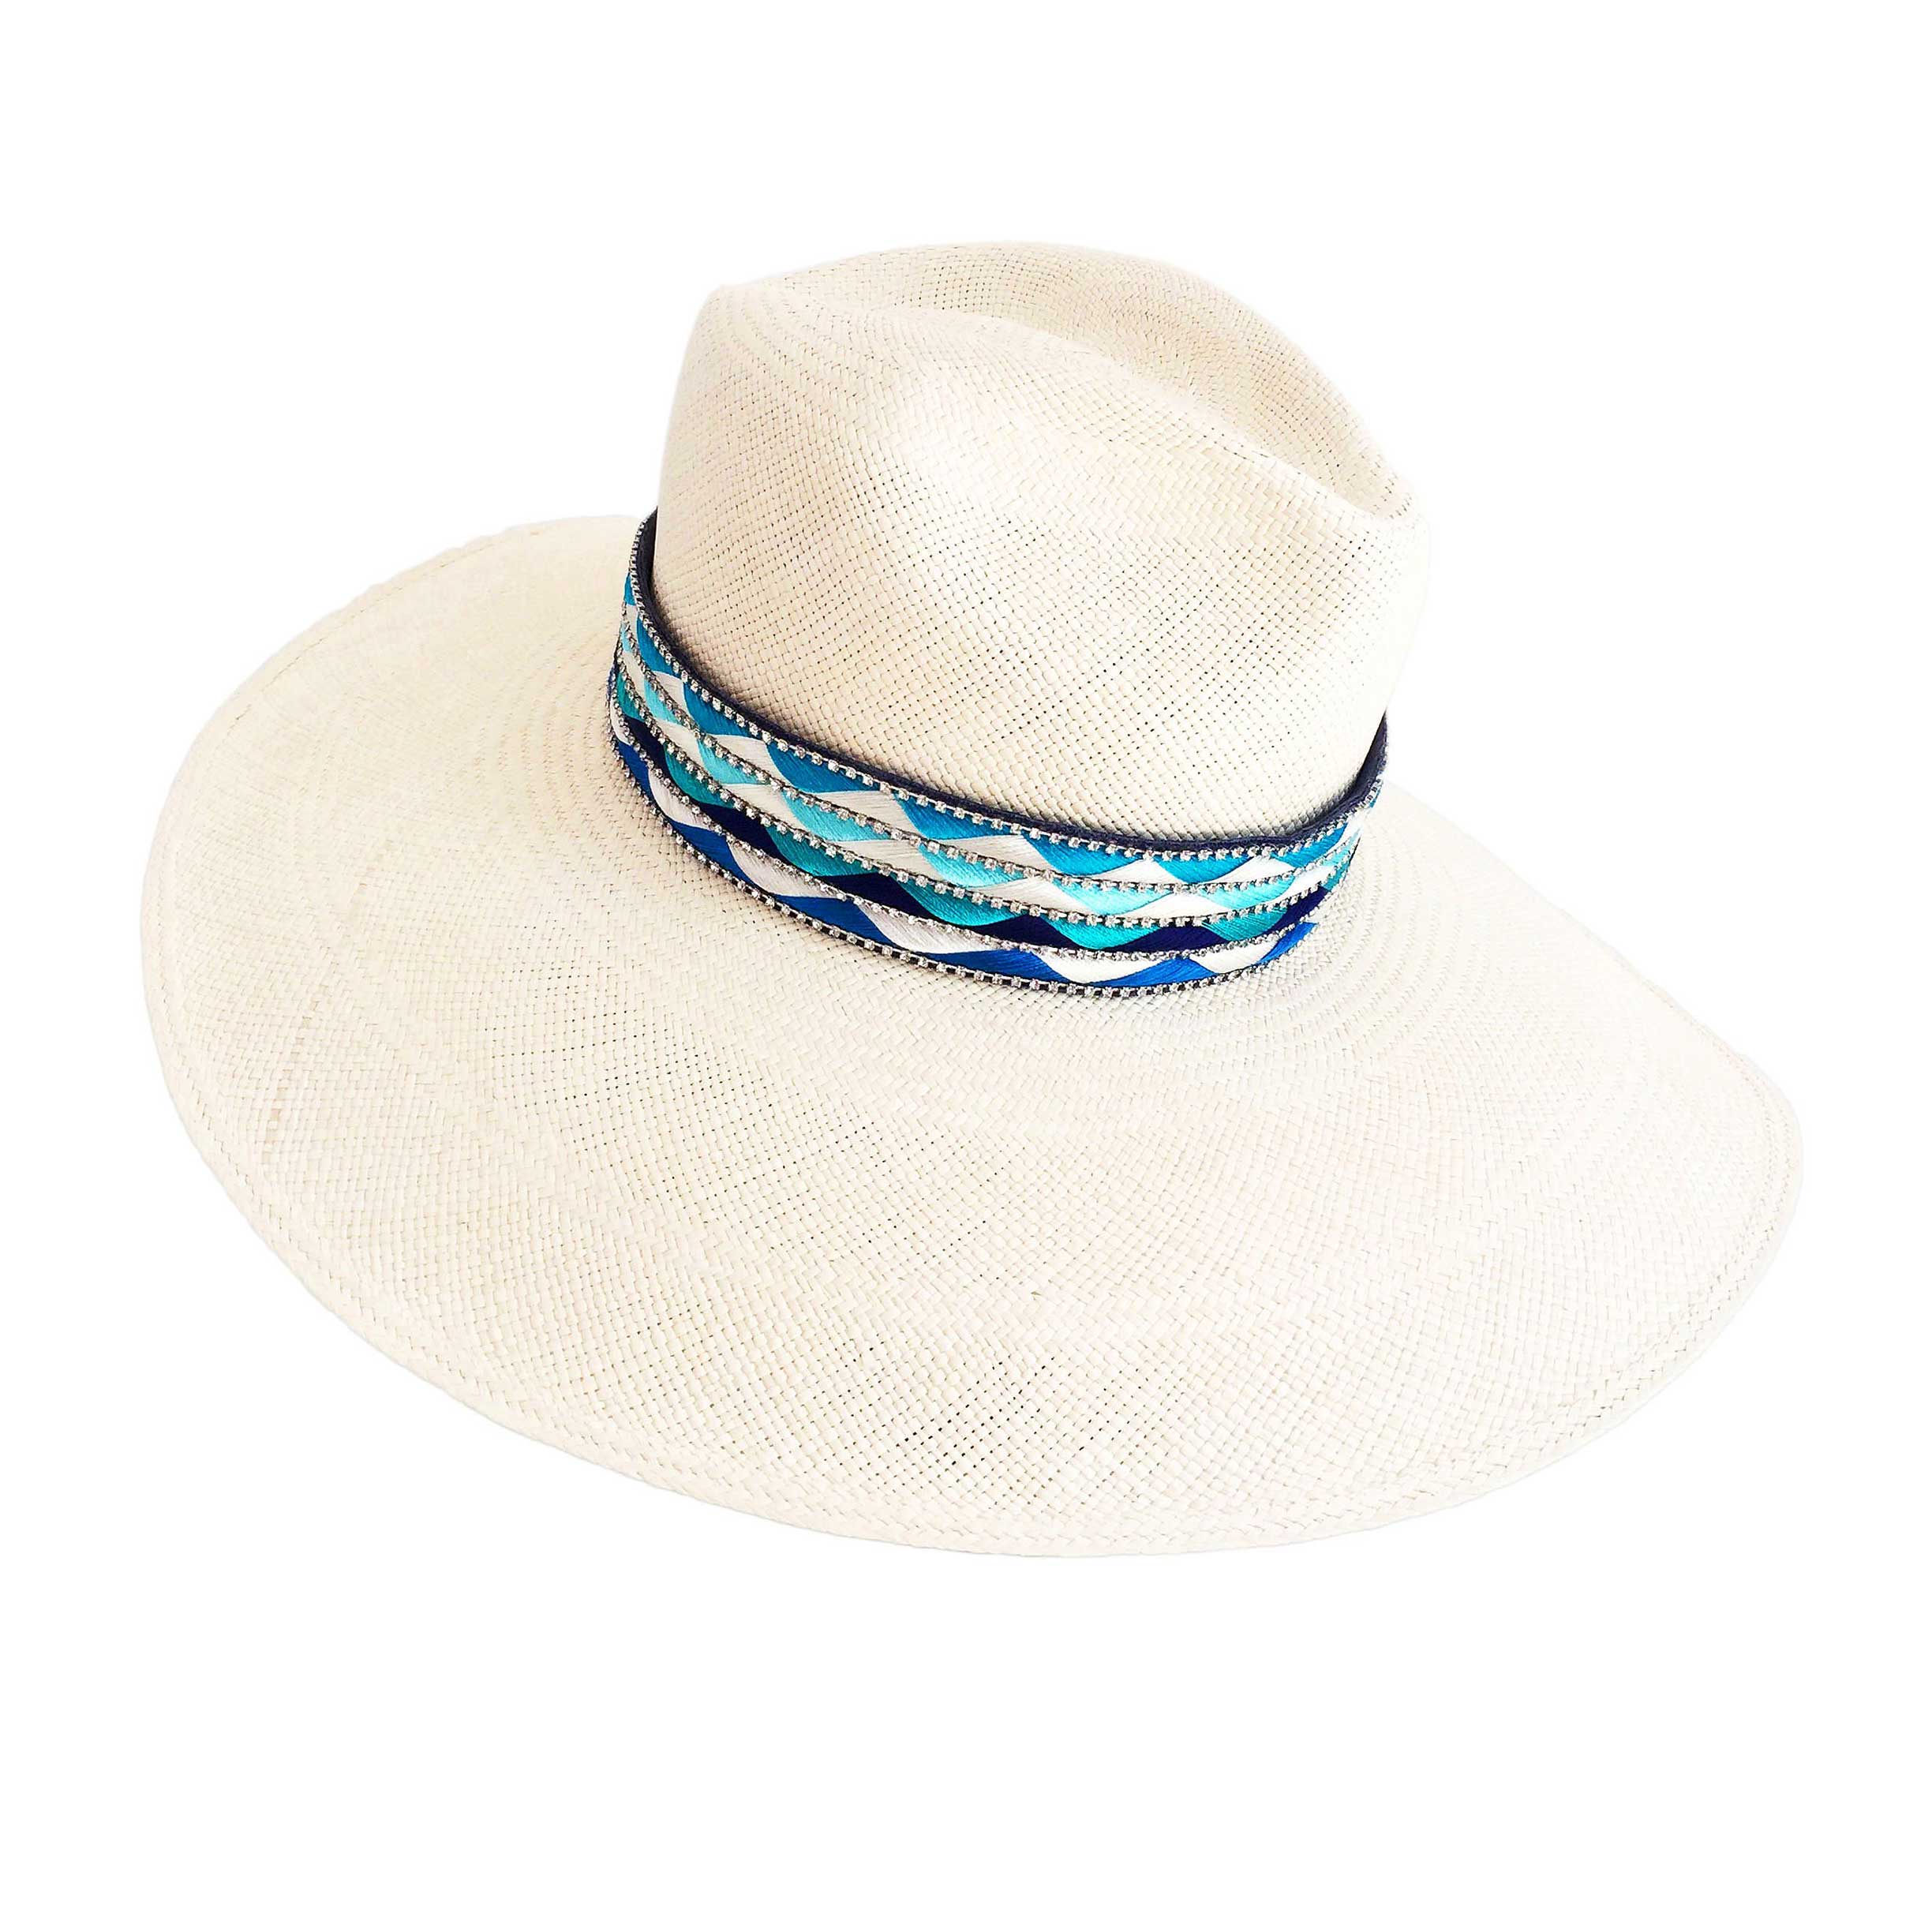 The Mallorca Multi Color Panama Hat